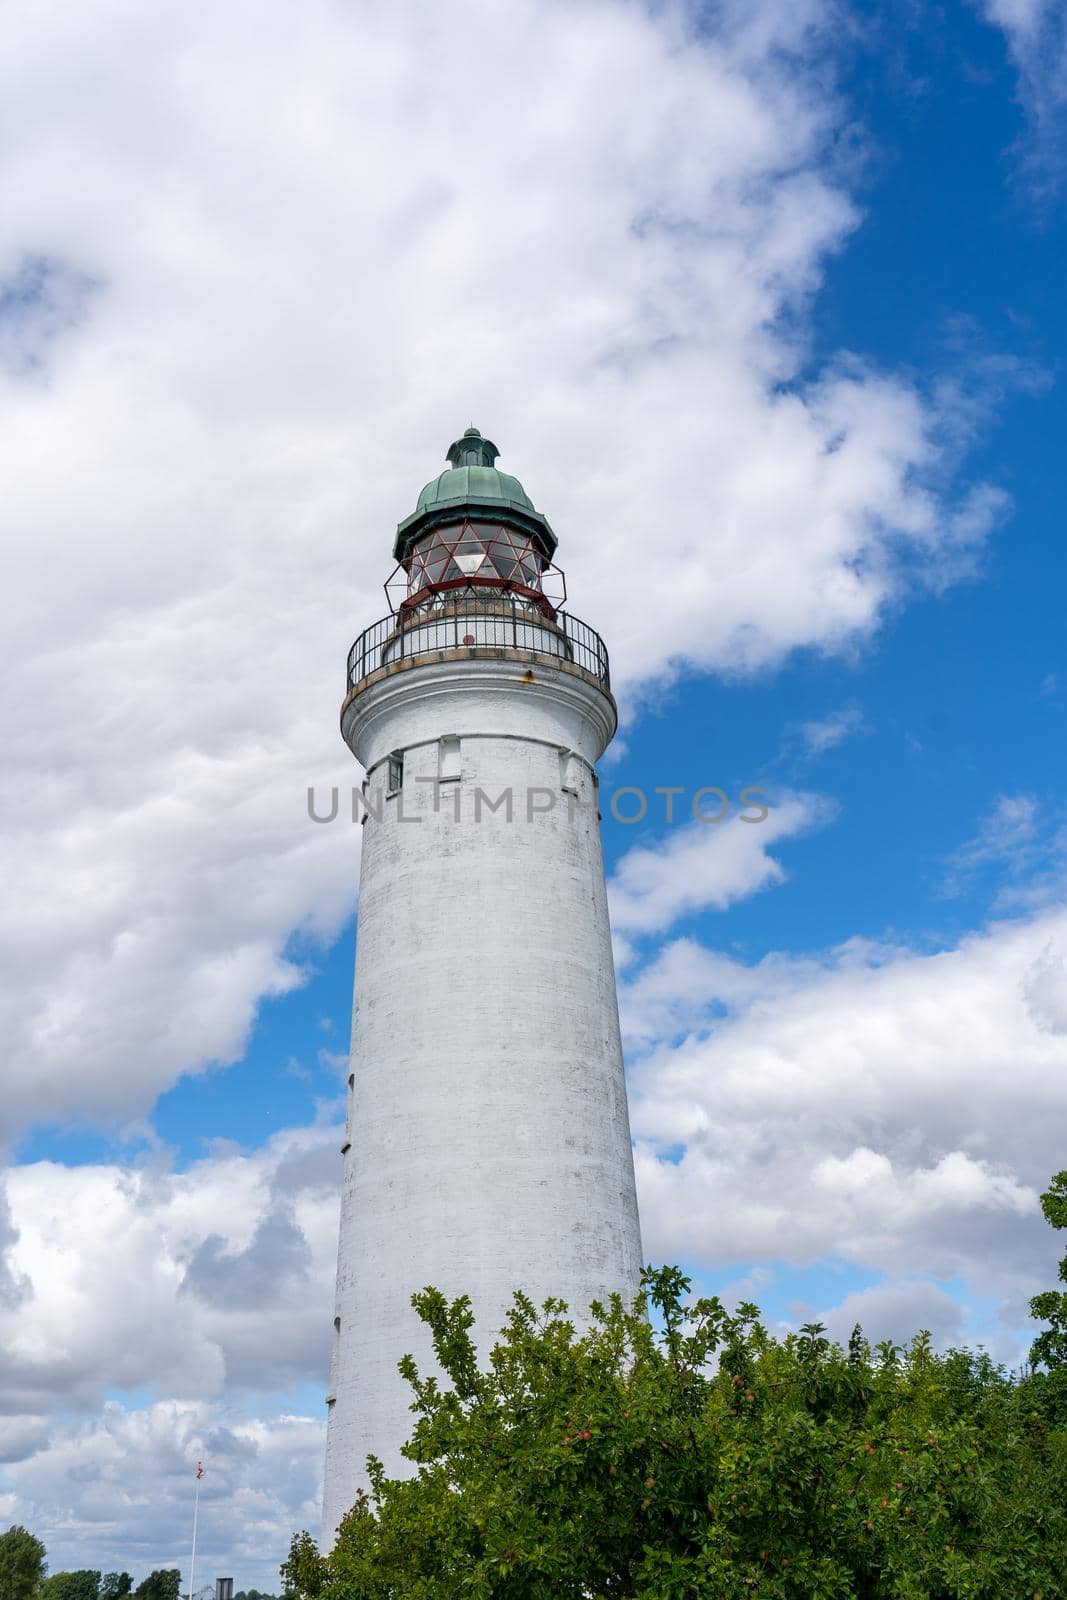 Stevns Lighthouse at Stevns Klint, Denmark by oliverfoerstner